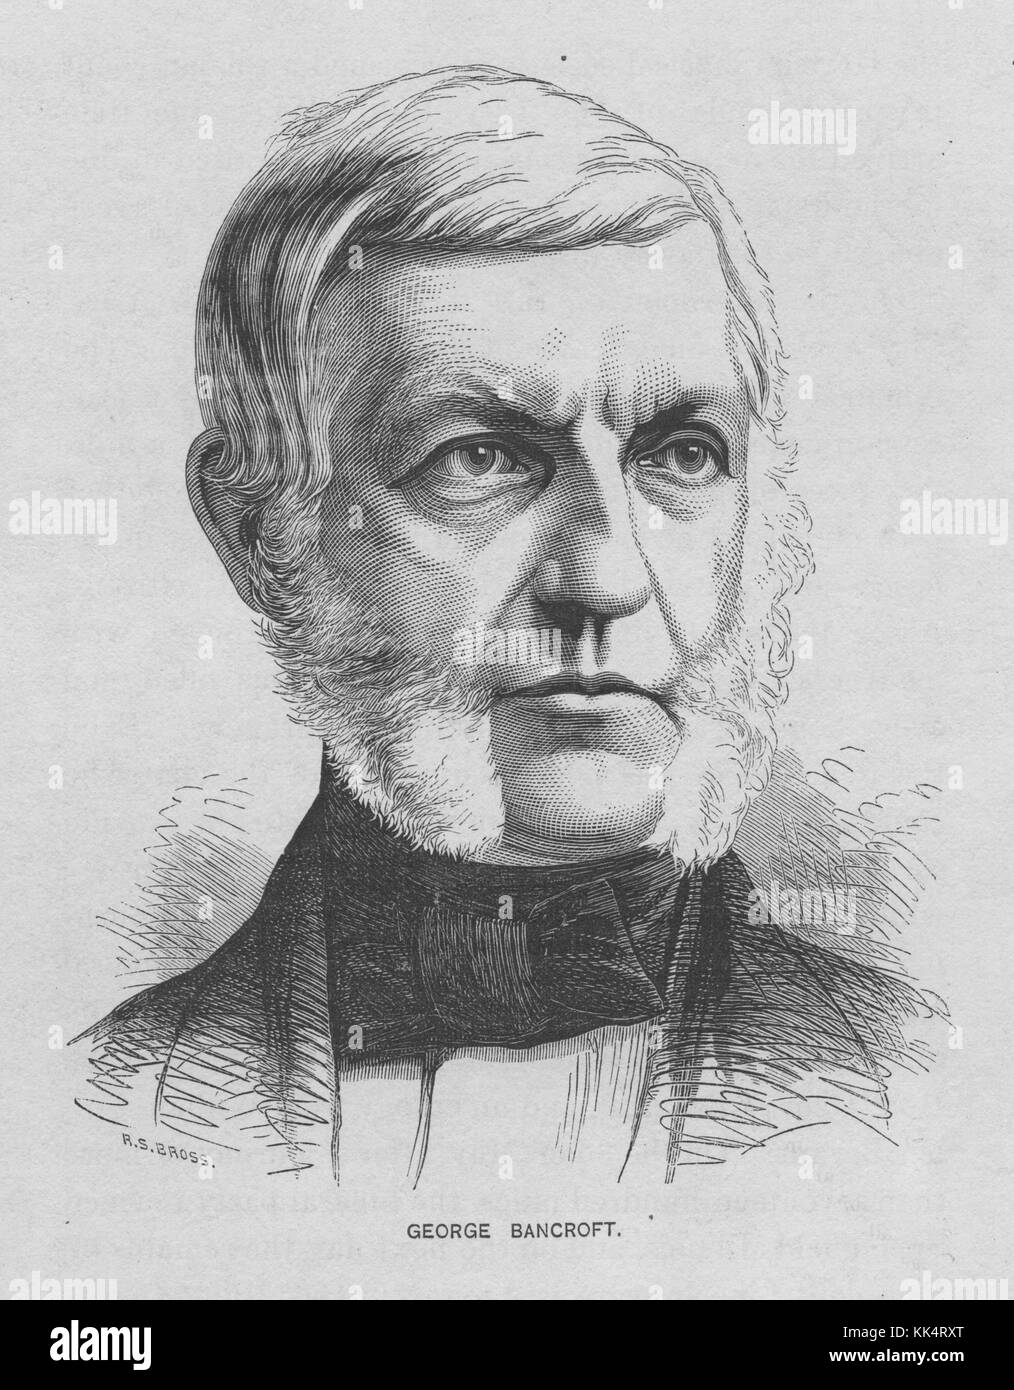 Porträt von George Bancroft, 17. United States Secretary of the Navy, gründete er die United States Naval Academy in Annapolis in 1845, USA, 1870. Aus der New York Public Library. Stockfoto